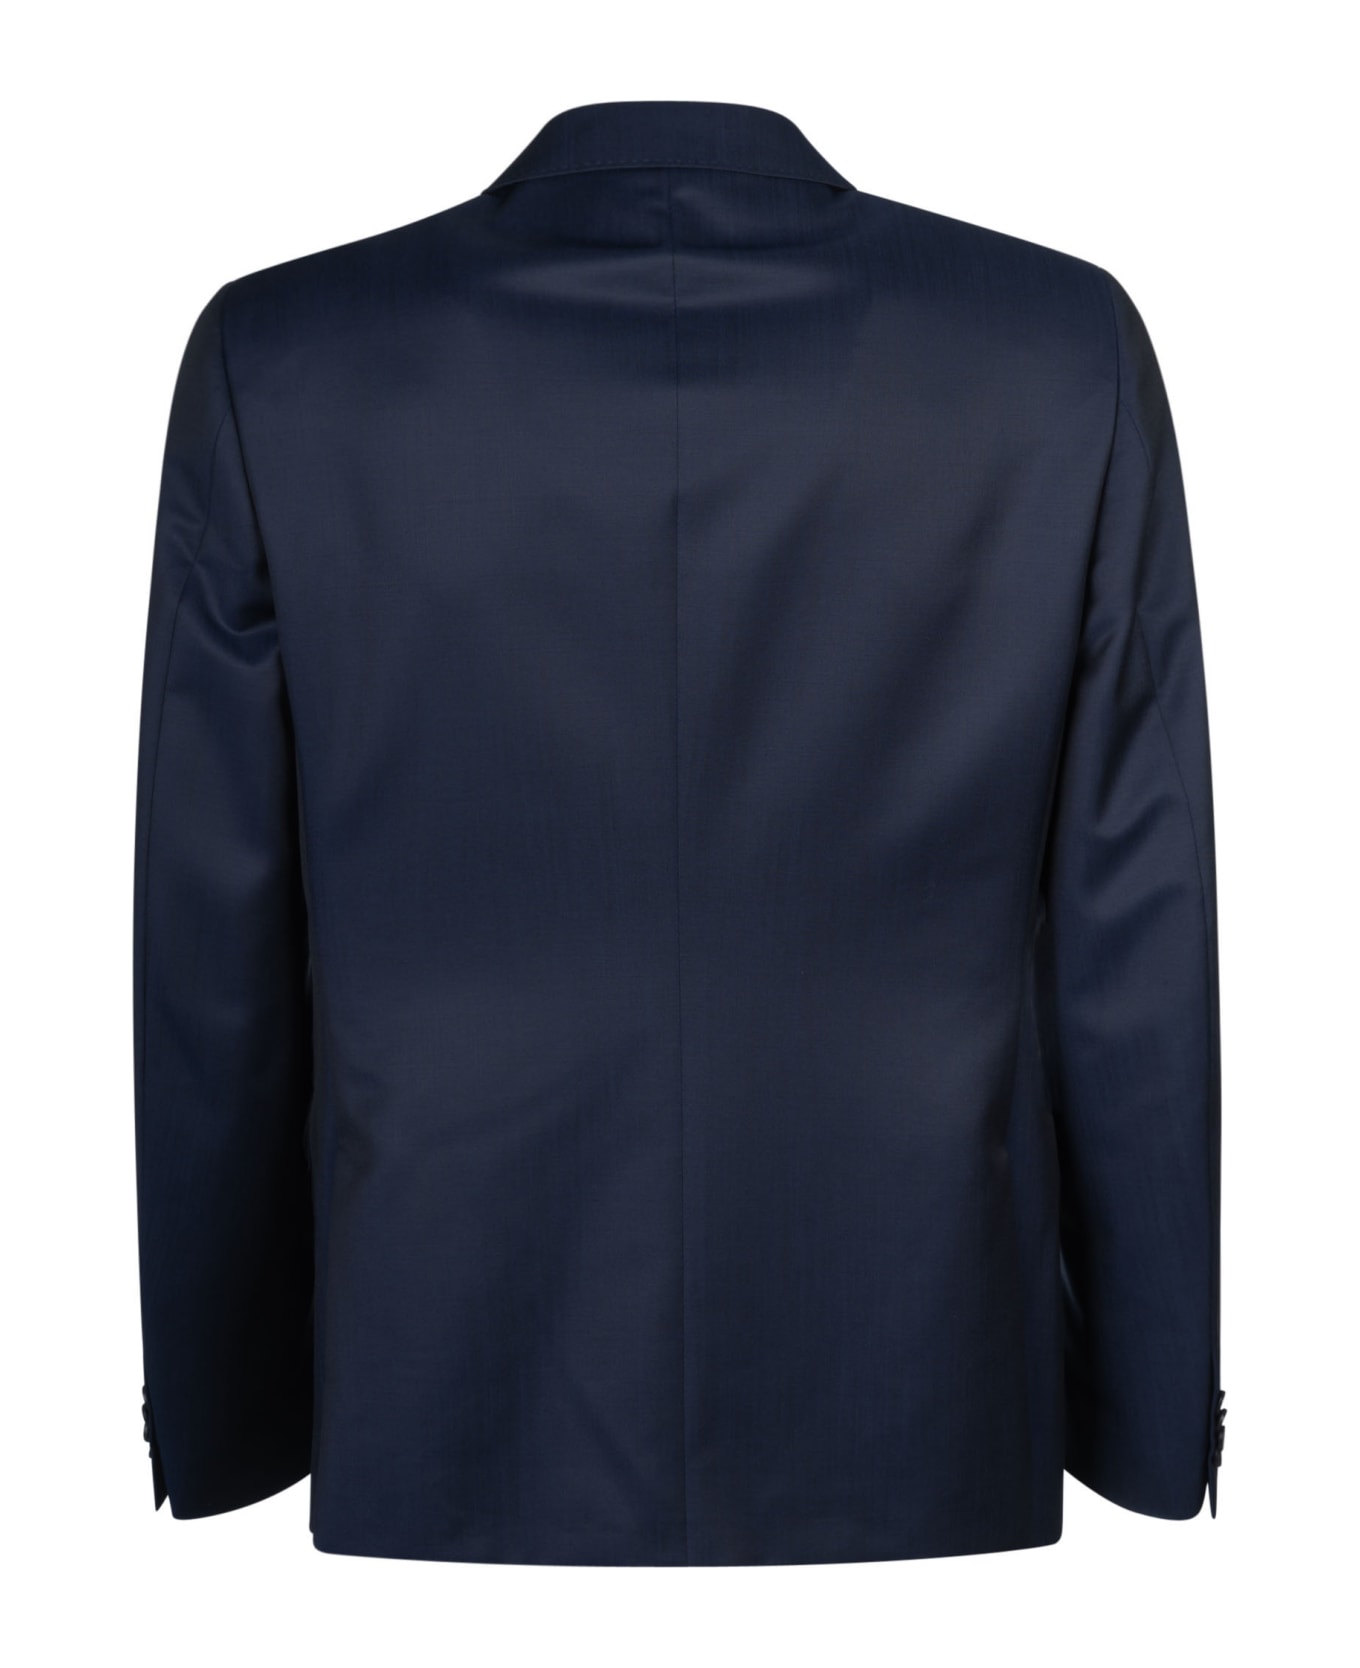 Zegna Classic Plain Suit - C